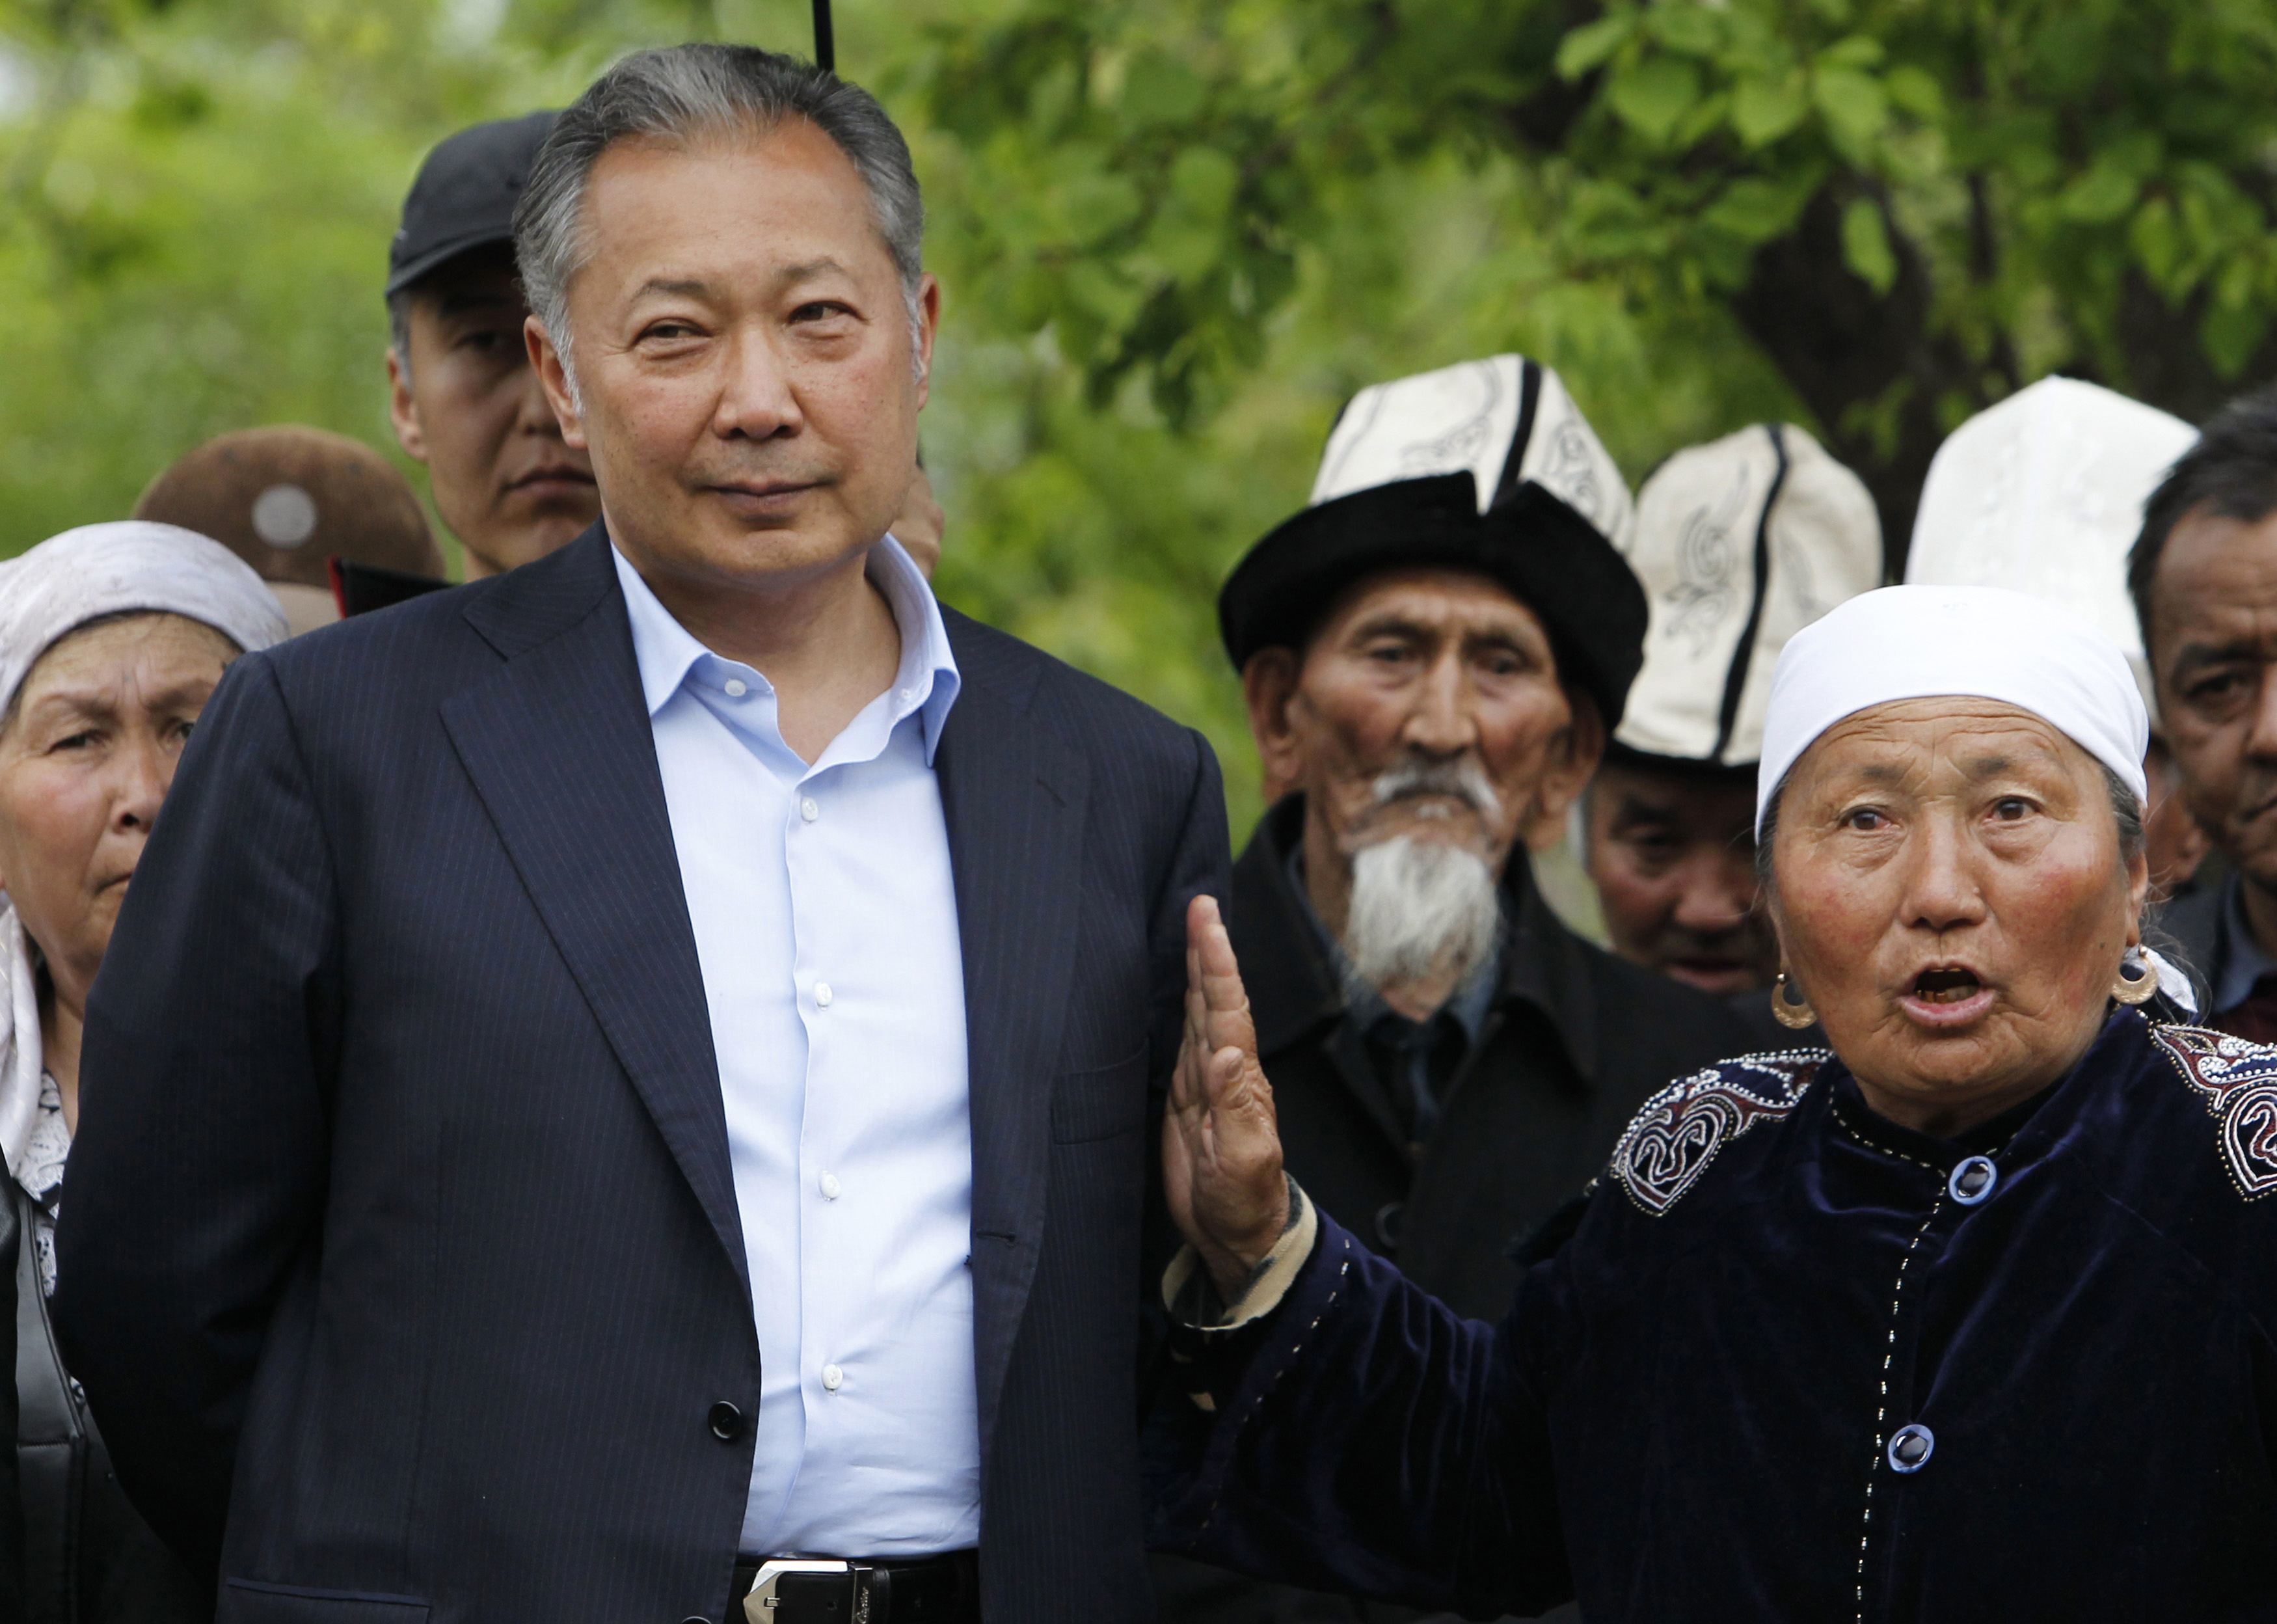 Η προσωρινή κυβέρνηση του Κιργιστάν ζητά την έκδοση Μπακίγεφ